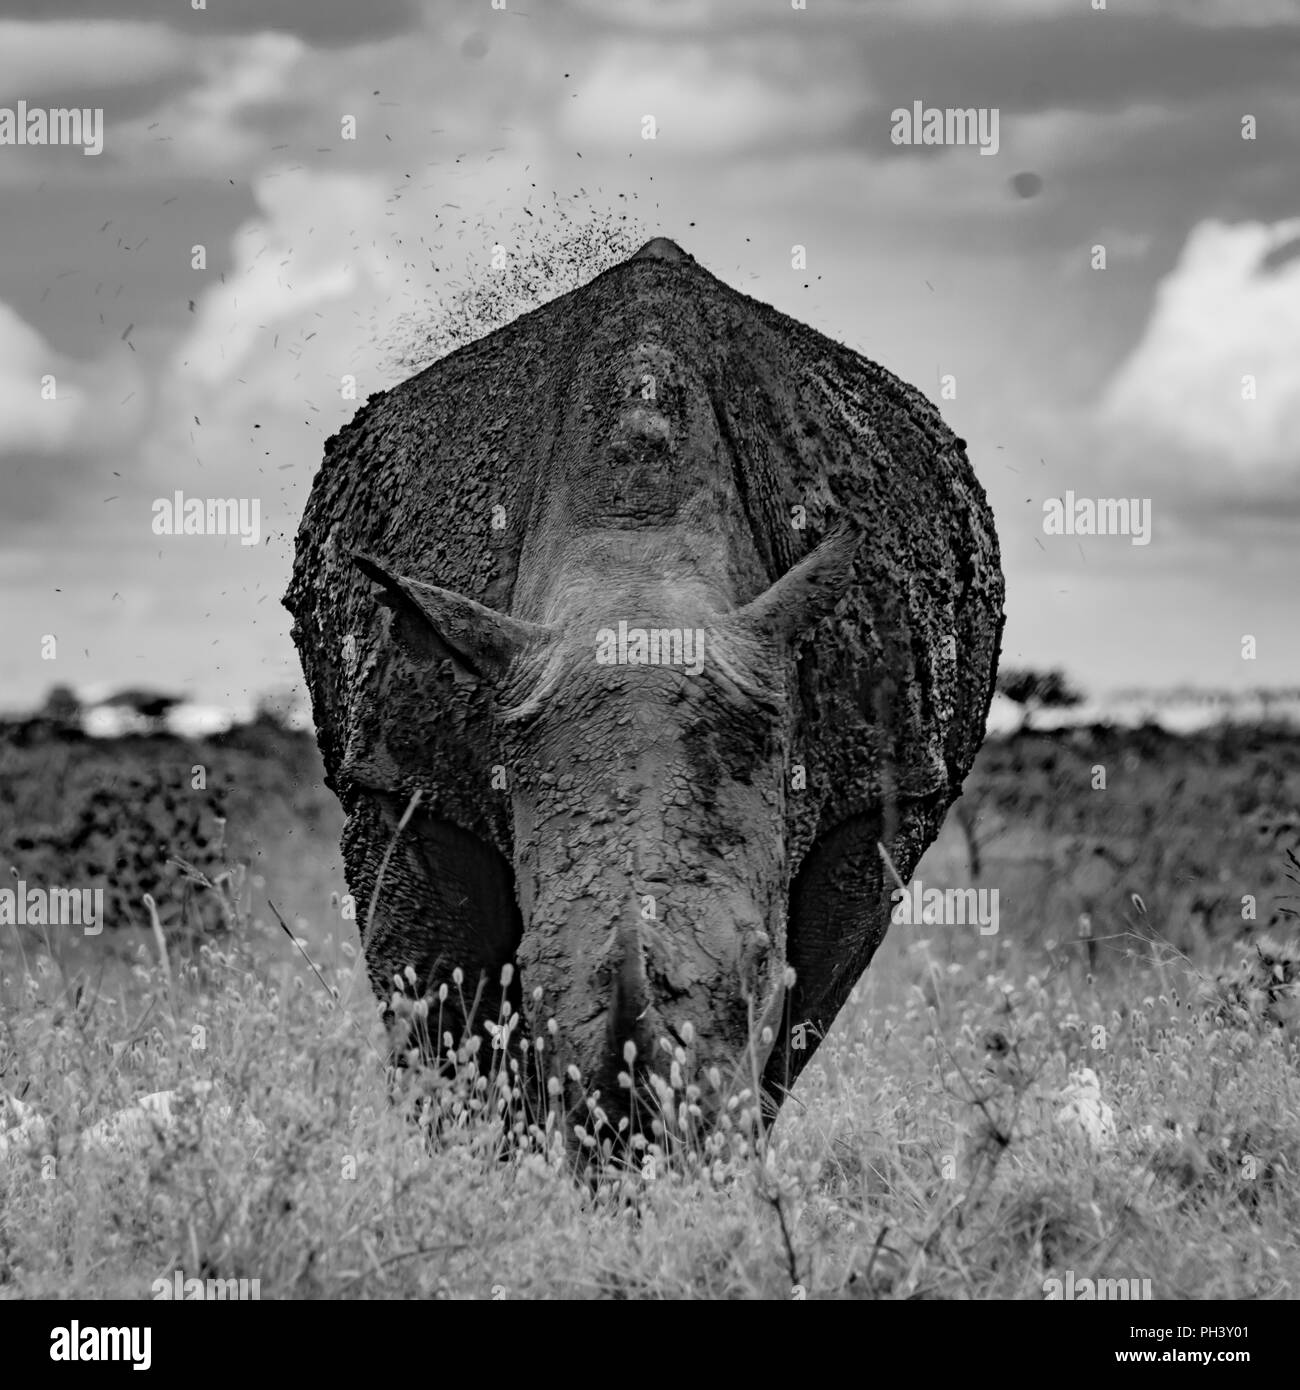 Rhino in a Mud Stock Photo